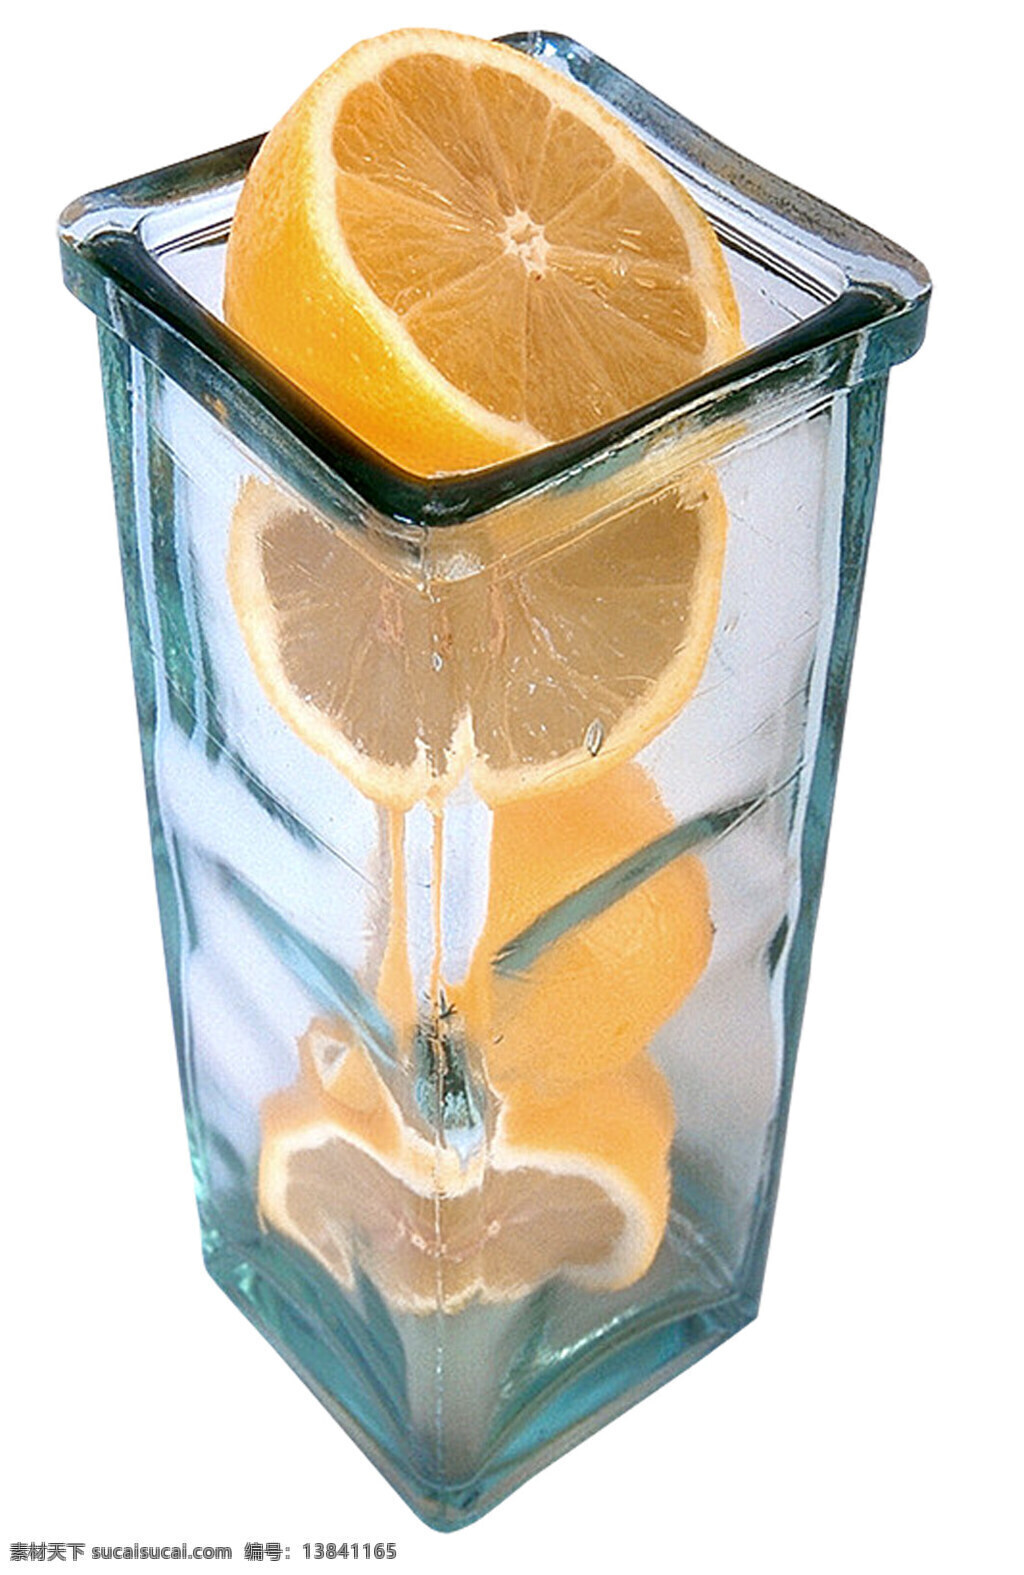 玻璃 罐里 柚子 玻璃罐 水果 切开水果 蔬菜图片 餐饮美食